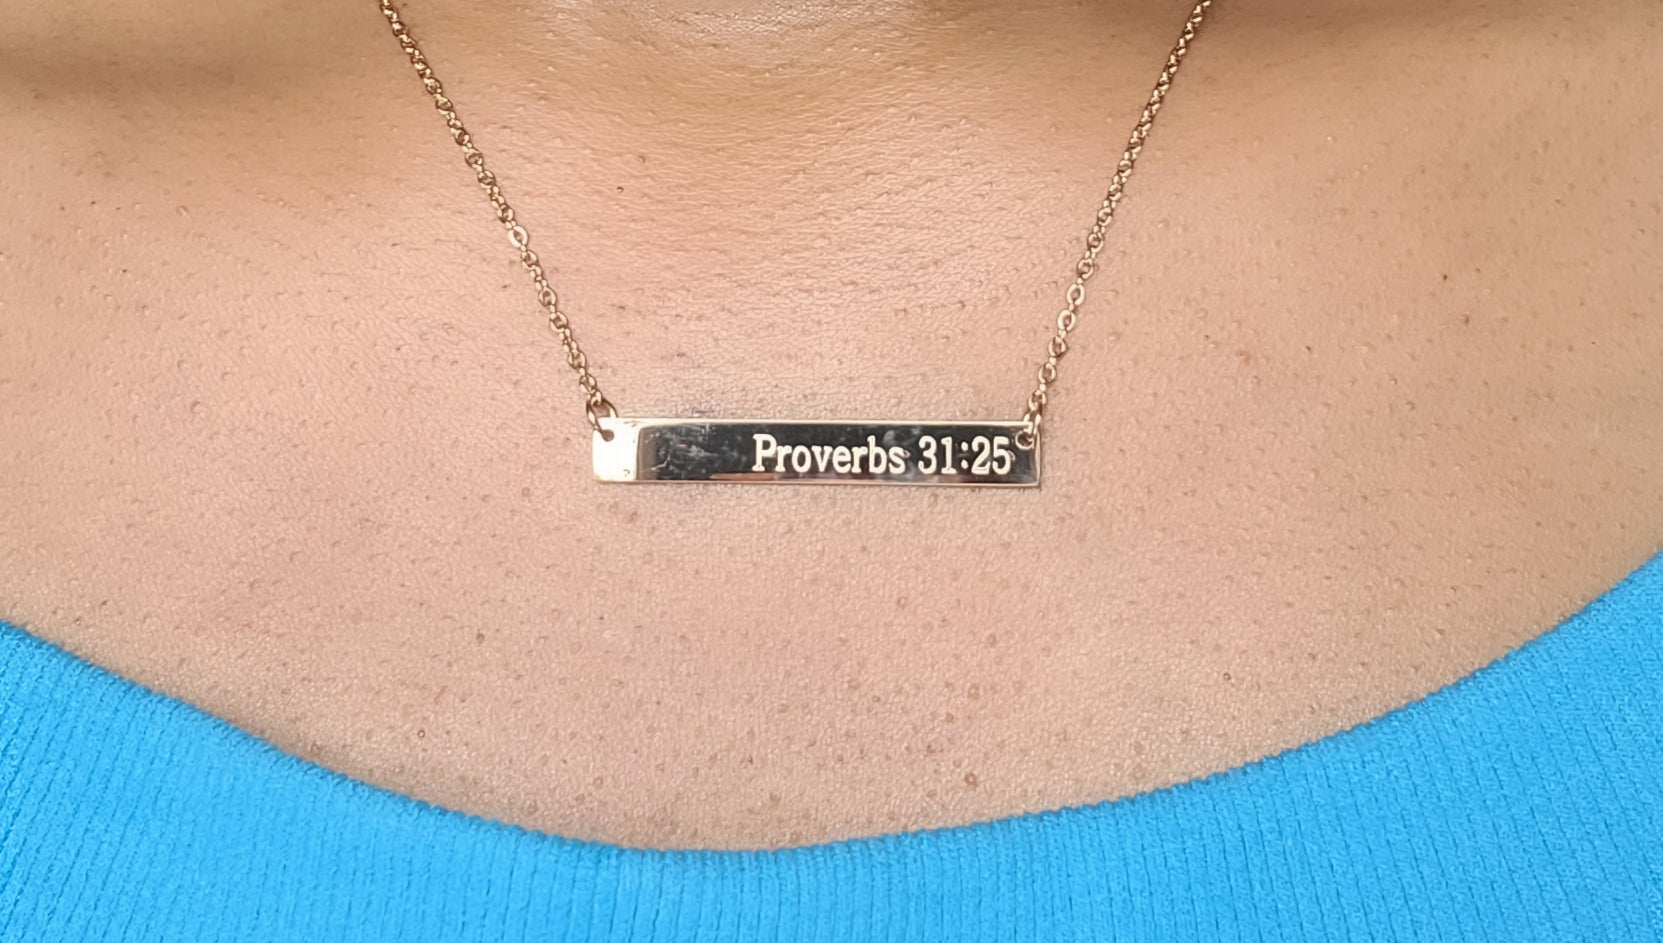 Proverbs 31:25 Bible Verse Bar Necklace